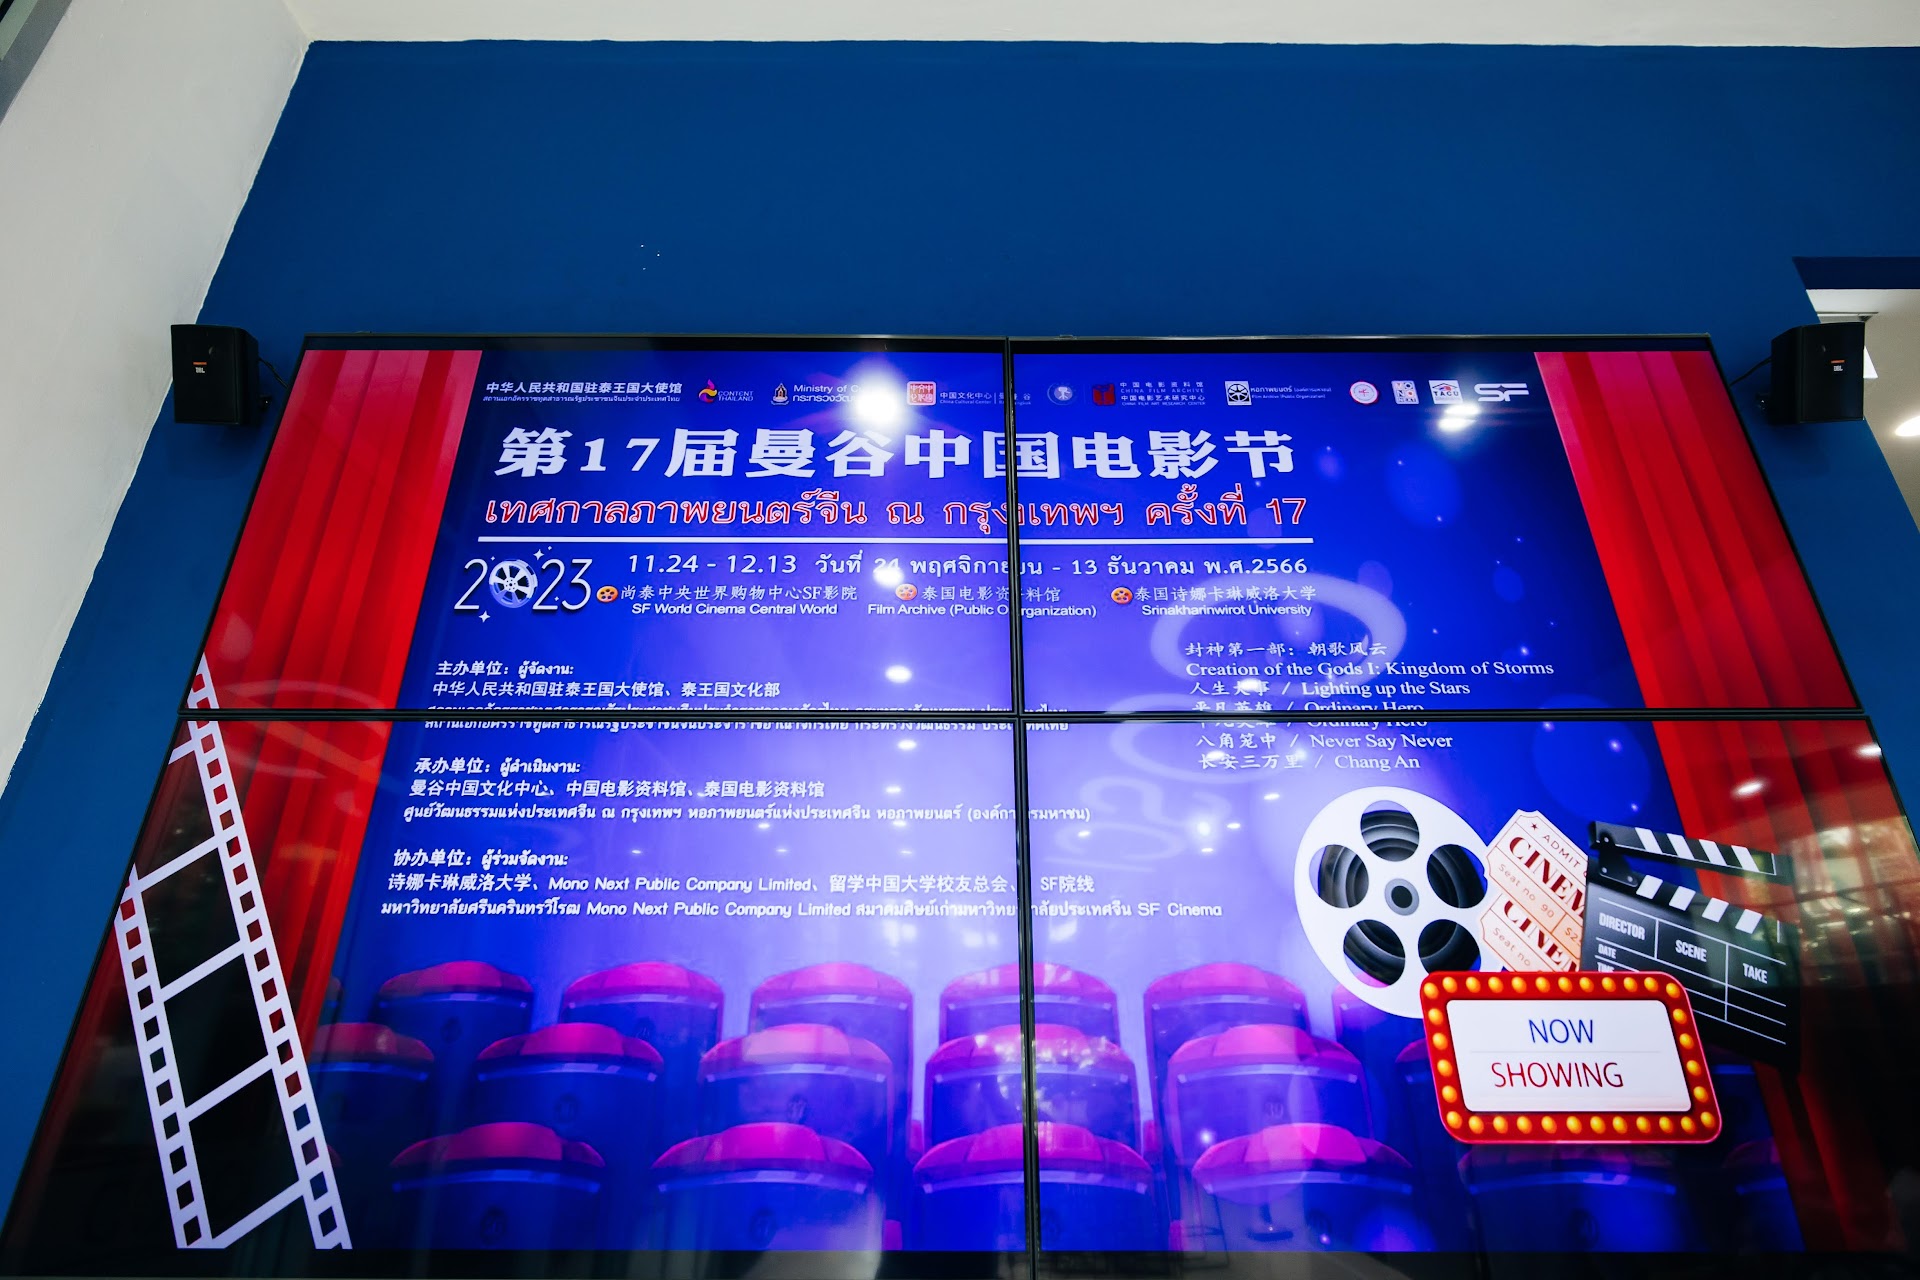 เทศกาลภาพยนตร์จีน ณ กรุงเทพฯ ครั้งที่ 17